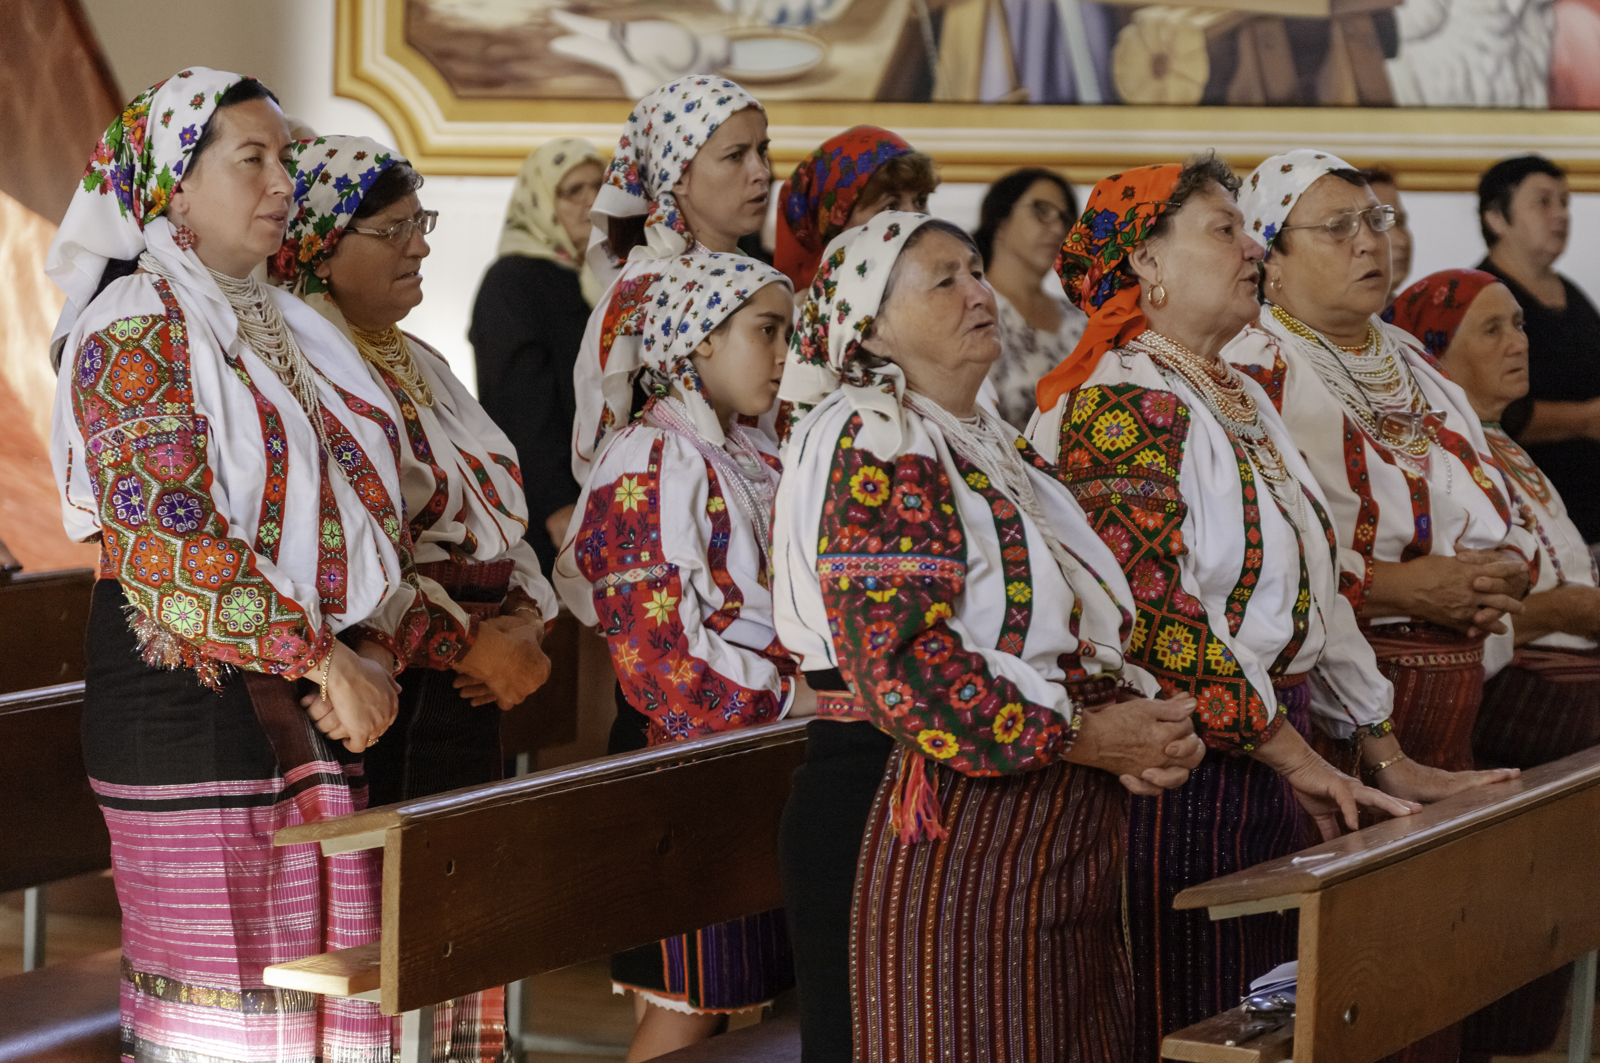 Sokan hagyományos csángó népviseletben vettek részt a szertartáson